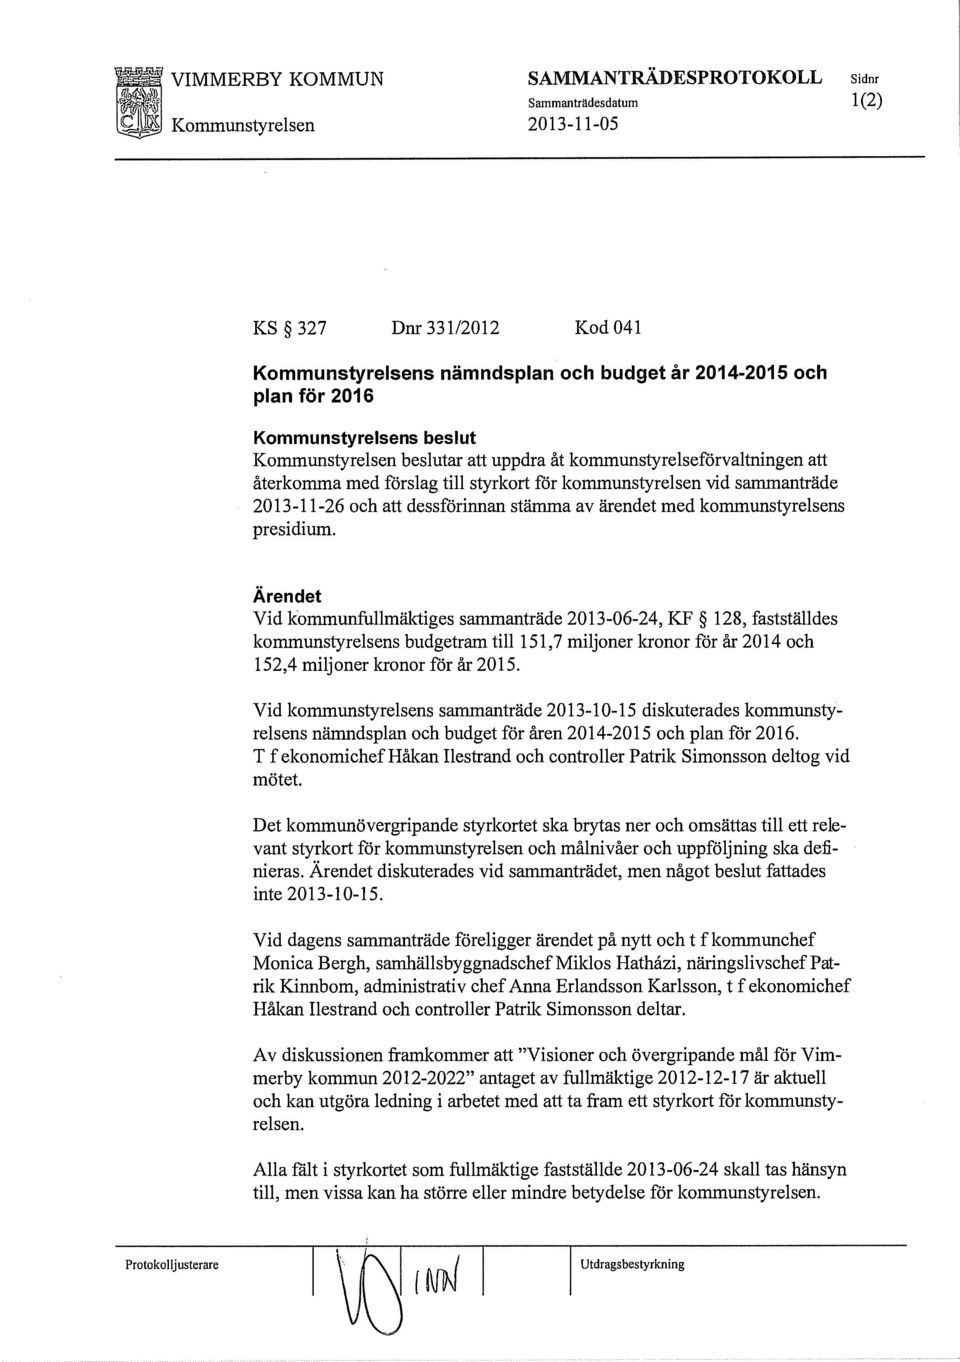 Vid kommunfullmäktiges sammanträde 2013-06-24, KF 128, fastställdes kommunstyrelsens budgetram till 151,7 miljoner kronor för år 2014 och 152,4 miljoner leronor för år 2015.